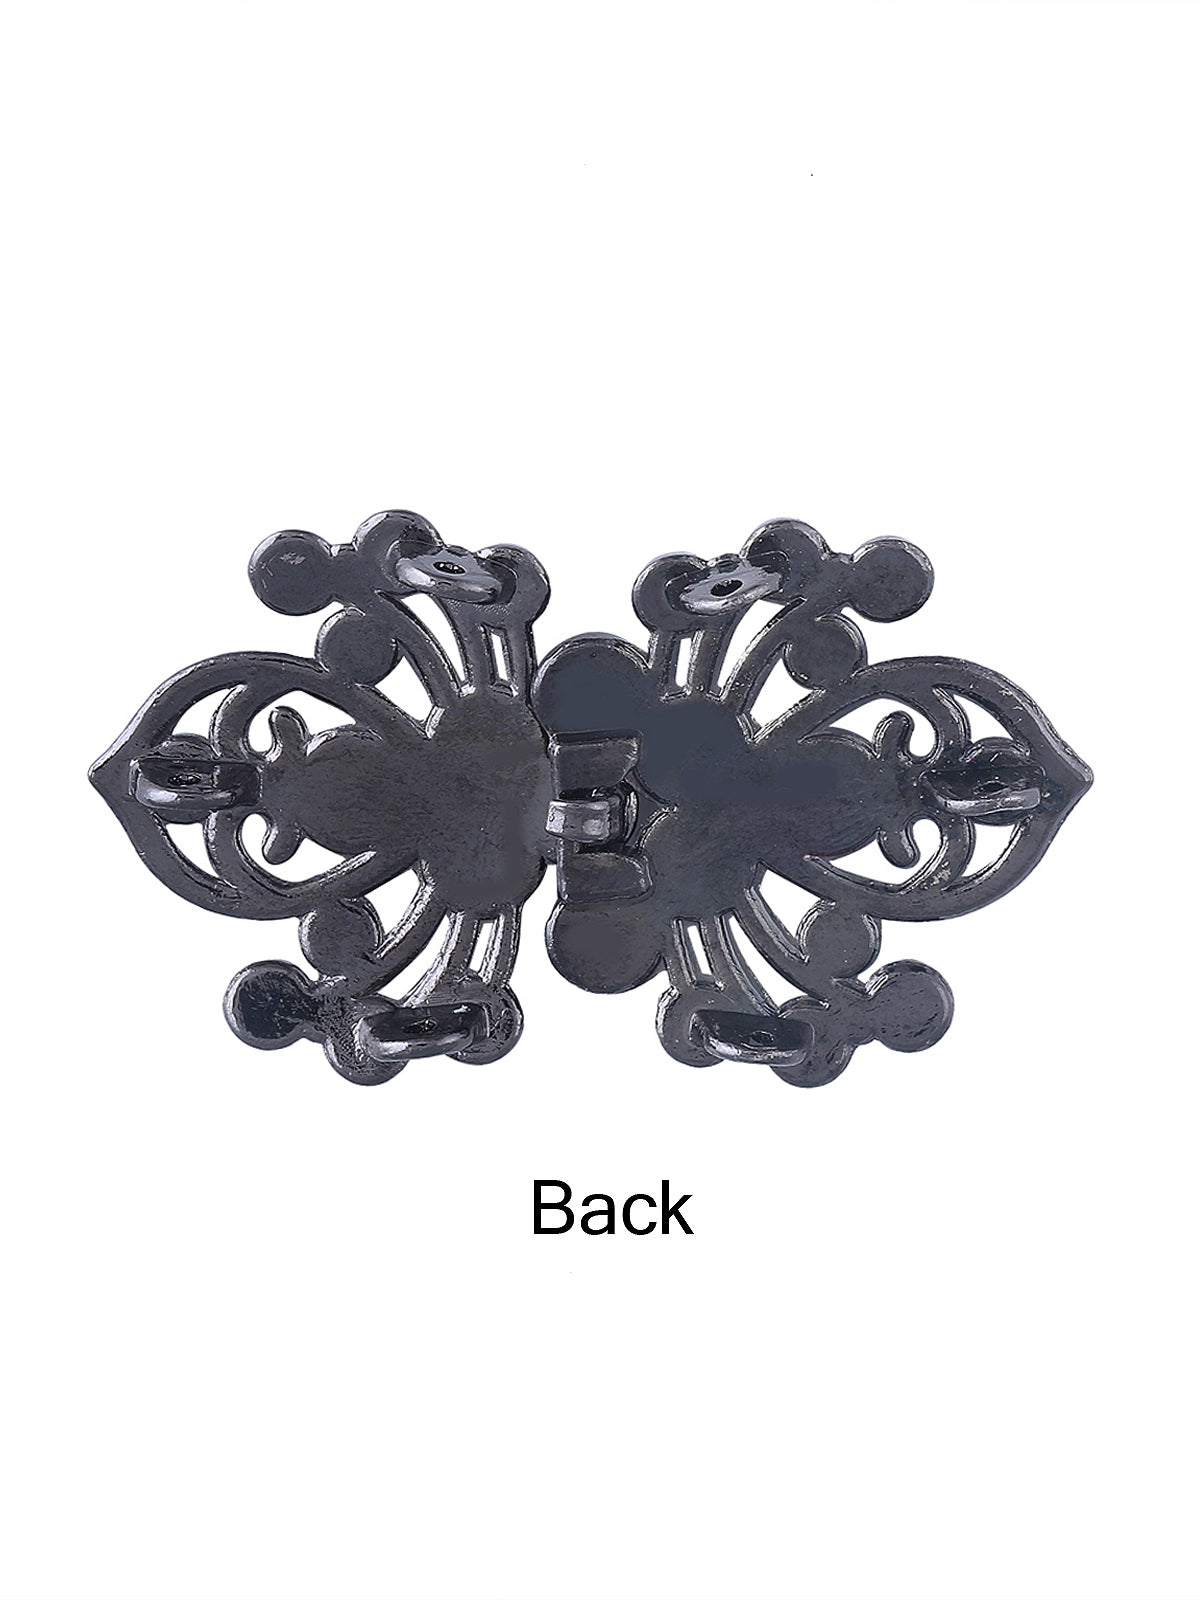 Diamond Spider Design Closure Clasp Buckle - Jhonea Accessories